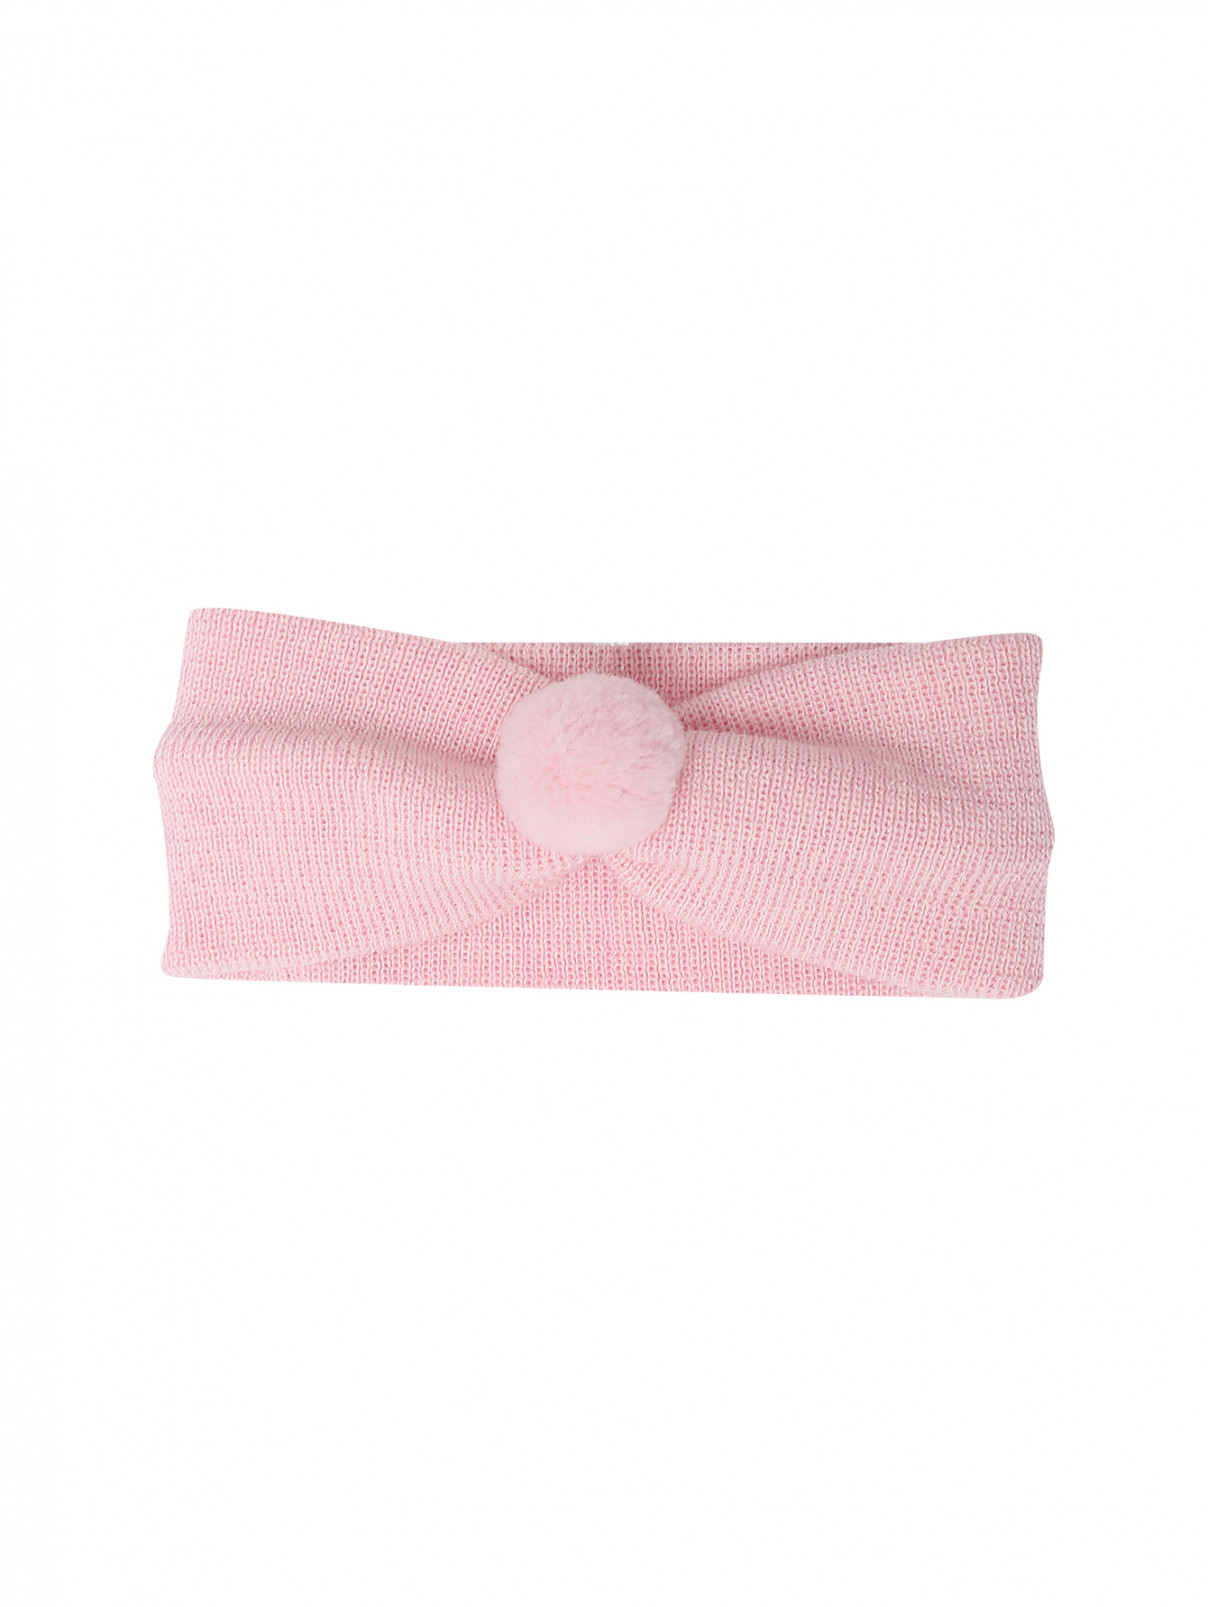 Повязка на голову из шерсти Bimbalo  –  Общий вид  – Цвет:  Розовый